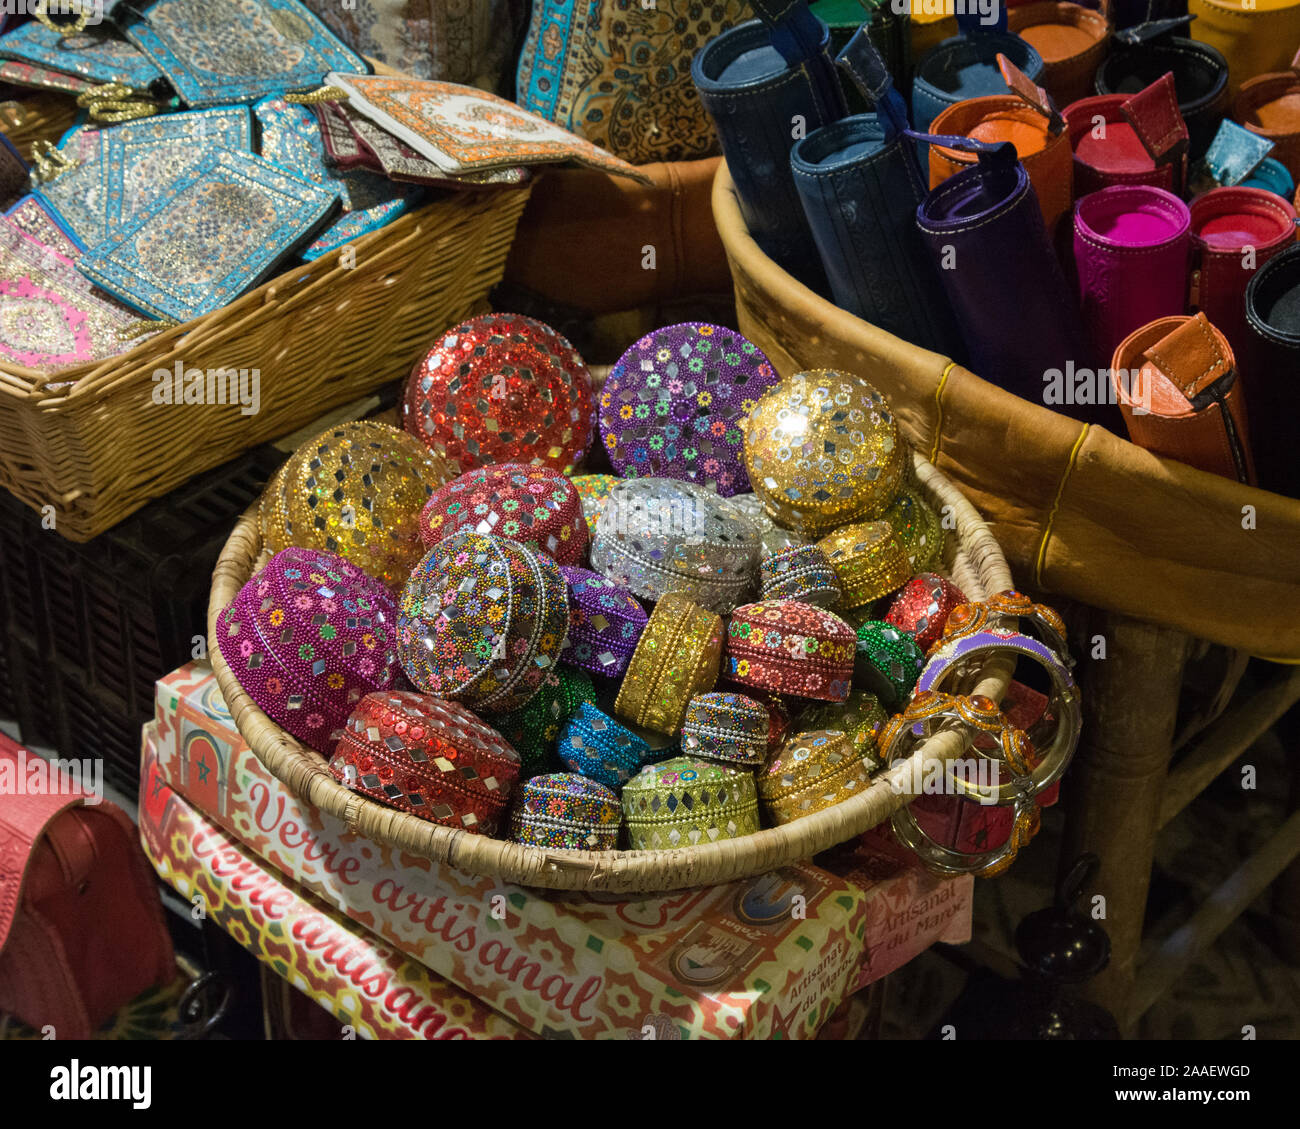 Bijou de perles colorées et d'autres boîtes de dons à afficher en vente dans une boutique de souvenirs à l'Albaicin, Grenade, Espagne Banque D'Images